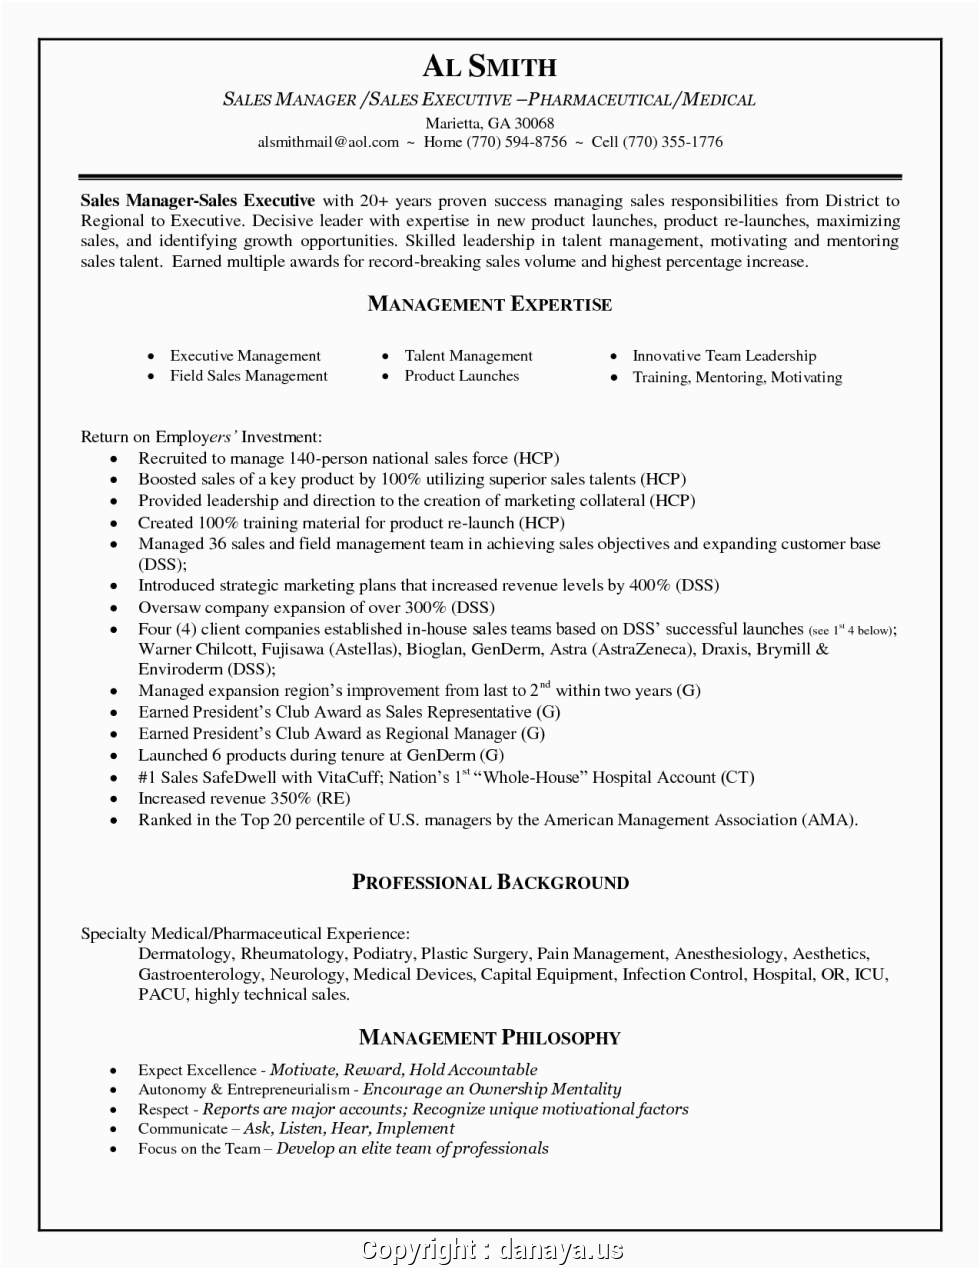 Sample Resume for Regional Sales Manager Pharma Newest Pharmaceutical Sales Manager Resume Ultimate Sample